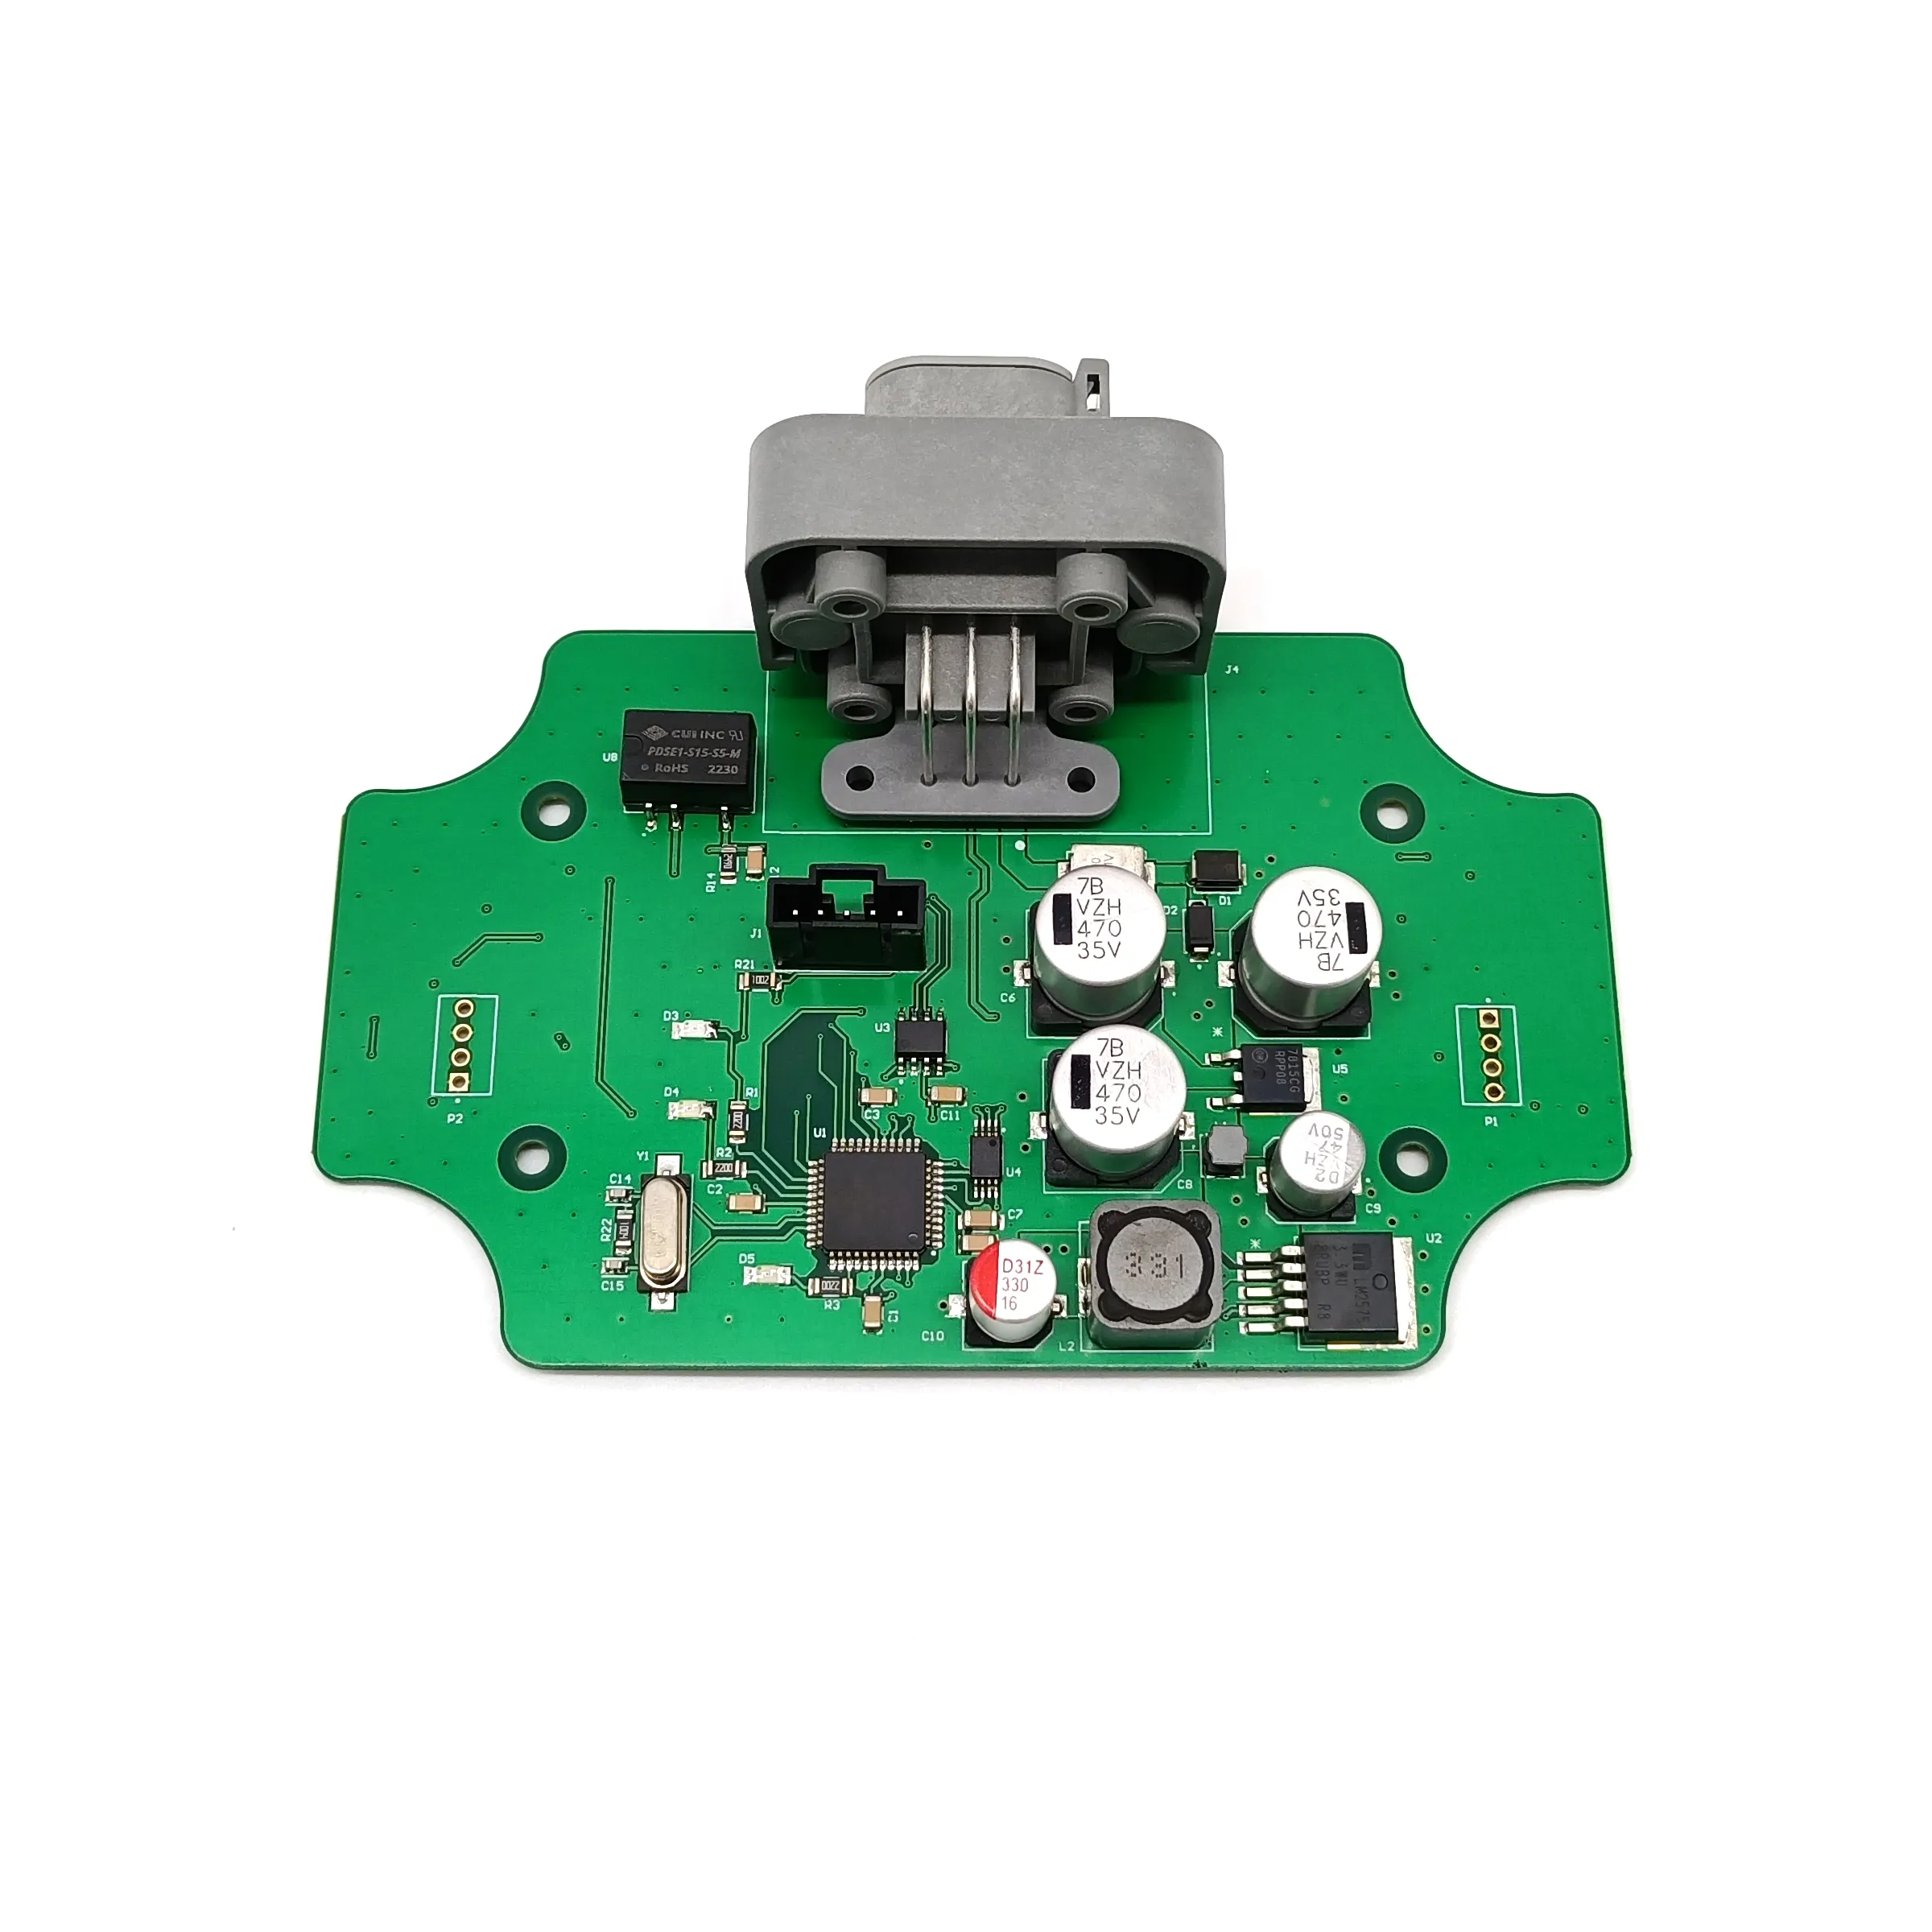 Personalizar pcb e fabricante pcba, programa de montagem de placa eletrônica pcb como arduino uno r3 smt pcba esp32 ou esp8266